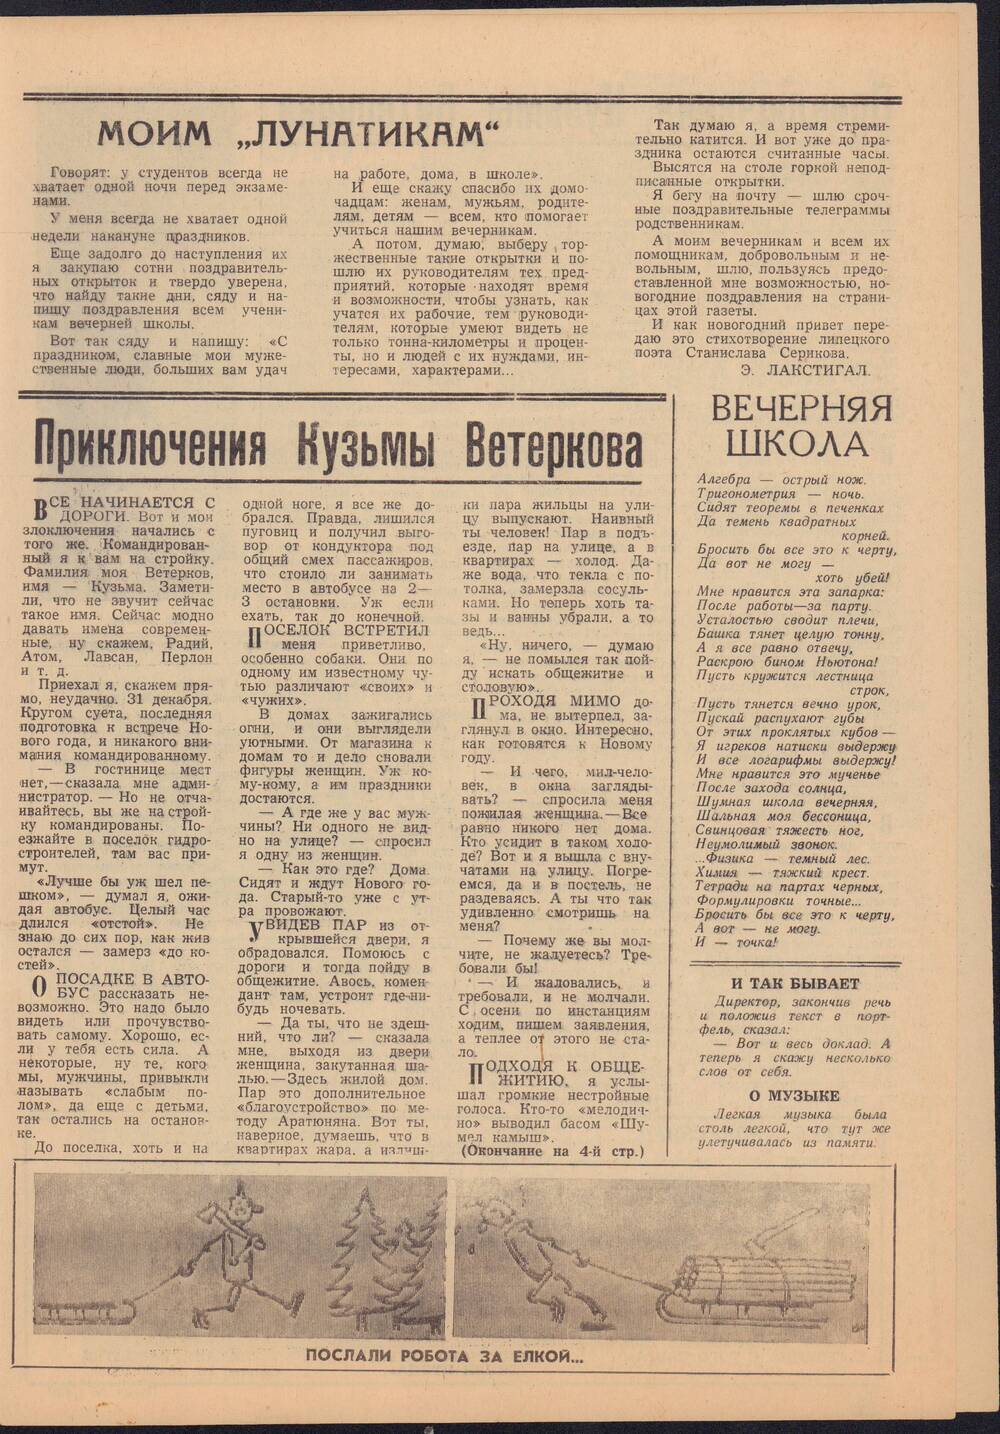 Газета Огни Зеи№1 от 1-го января 1968 года с публикацией Э. Лакстигал Моим лунатикам.